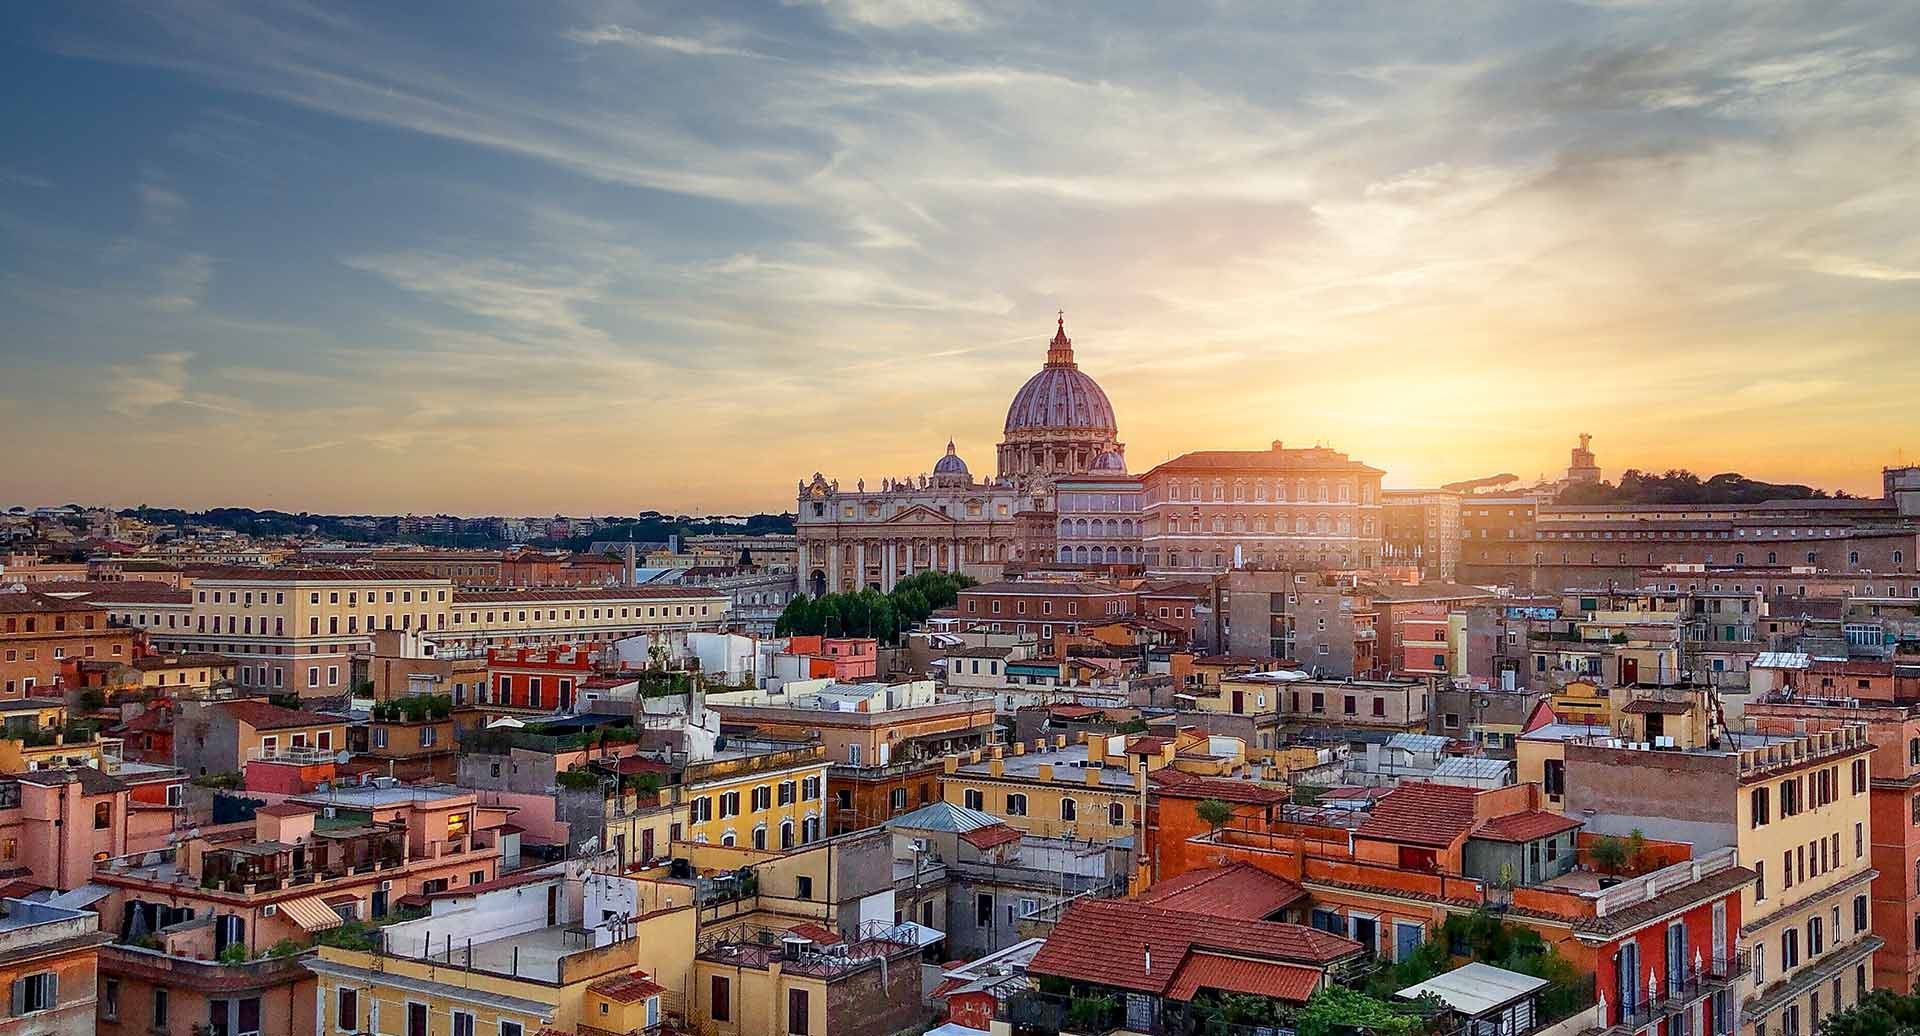 Imagen compuesta por un plano aéreo de la ciudad de Roma. En primer plano, hay varios edificios residenciales y al fondo varios monumentos de la ciudad de Roma con la puesta de sol por detrás.